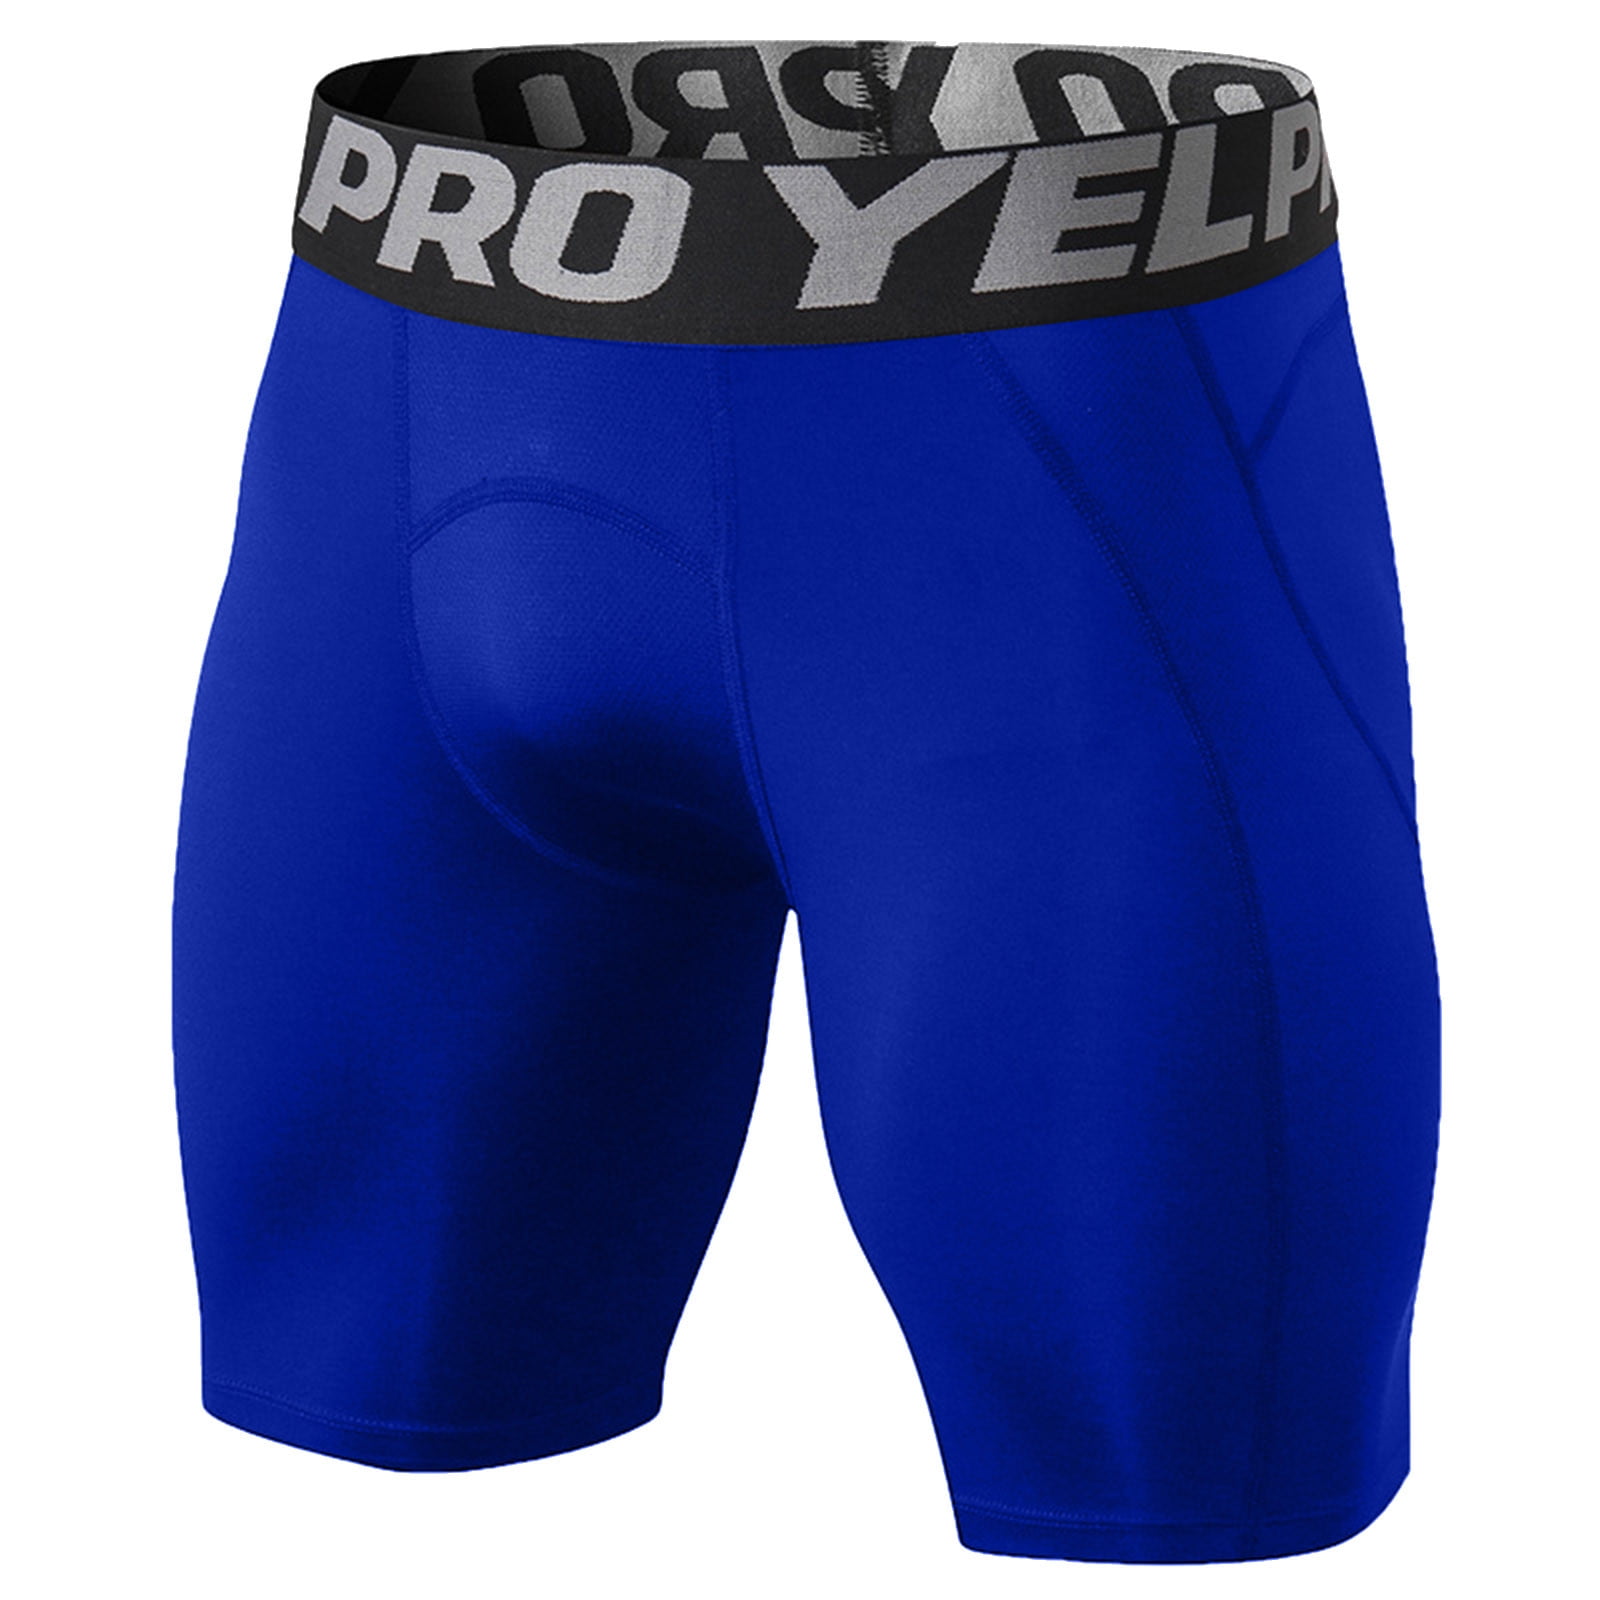 Pimfylm Cargo Pants For Men Men's Classic Fit Easy Pants Blue X-Large ...